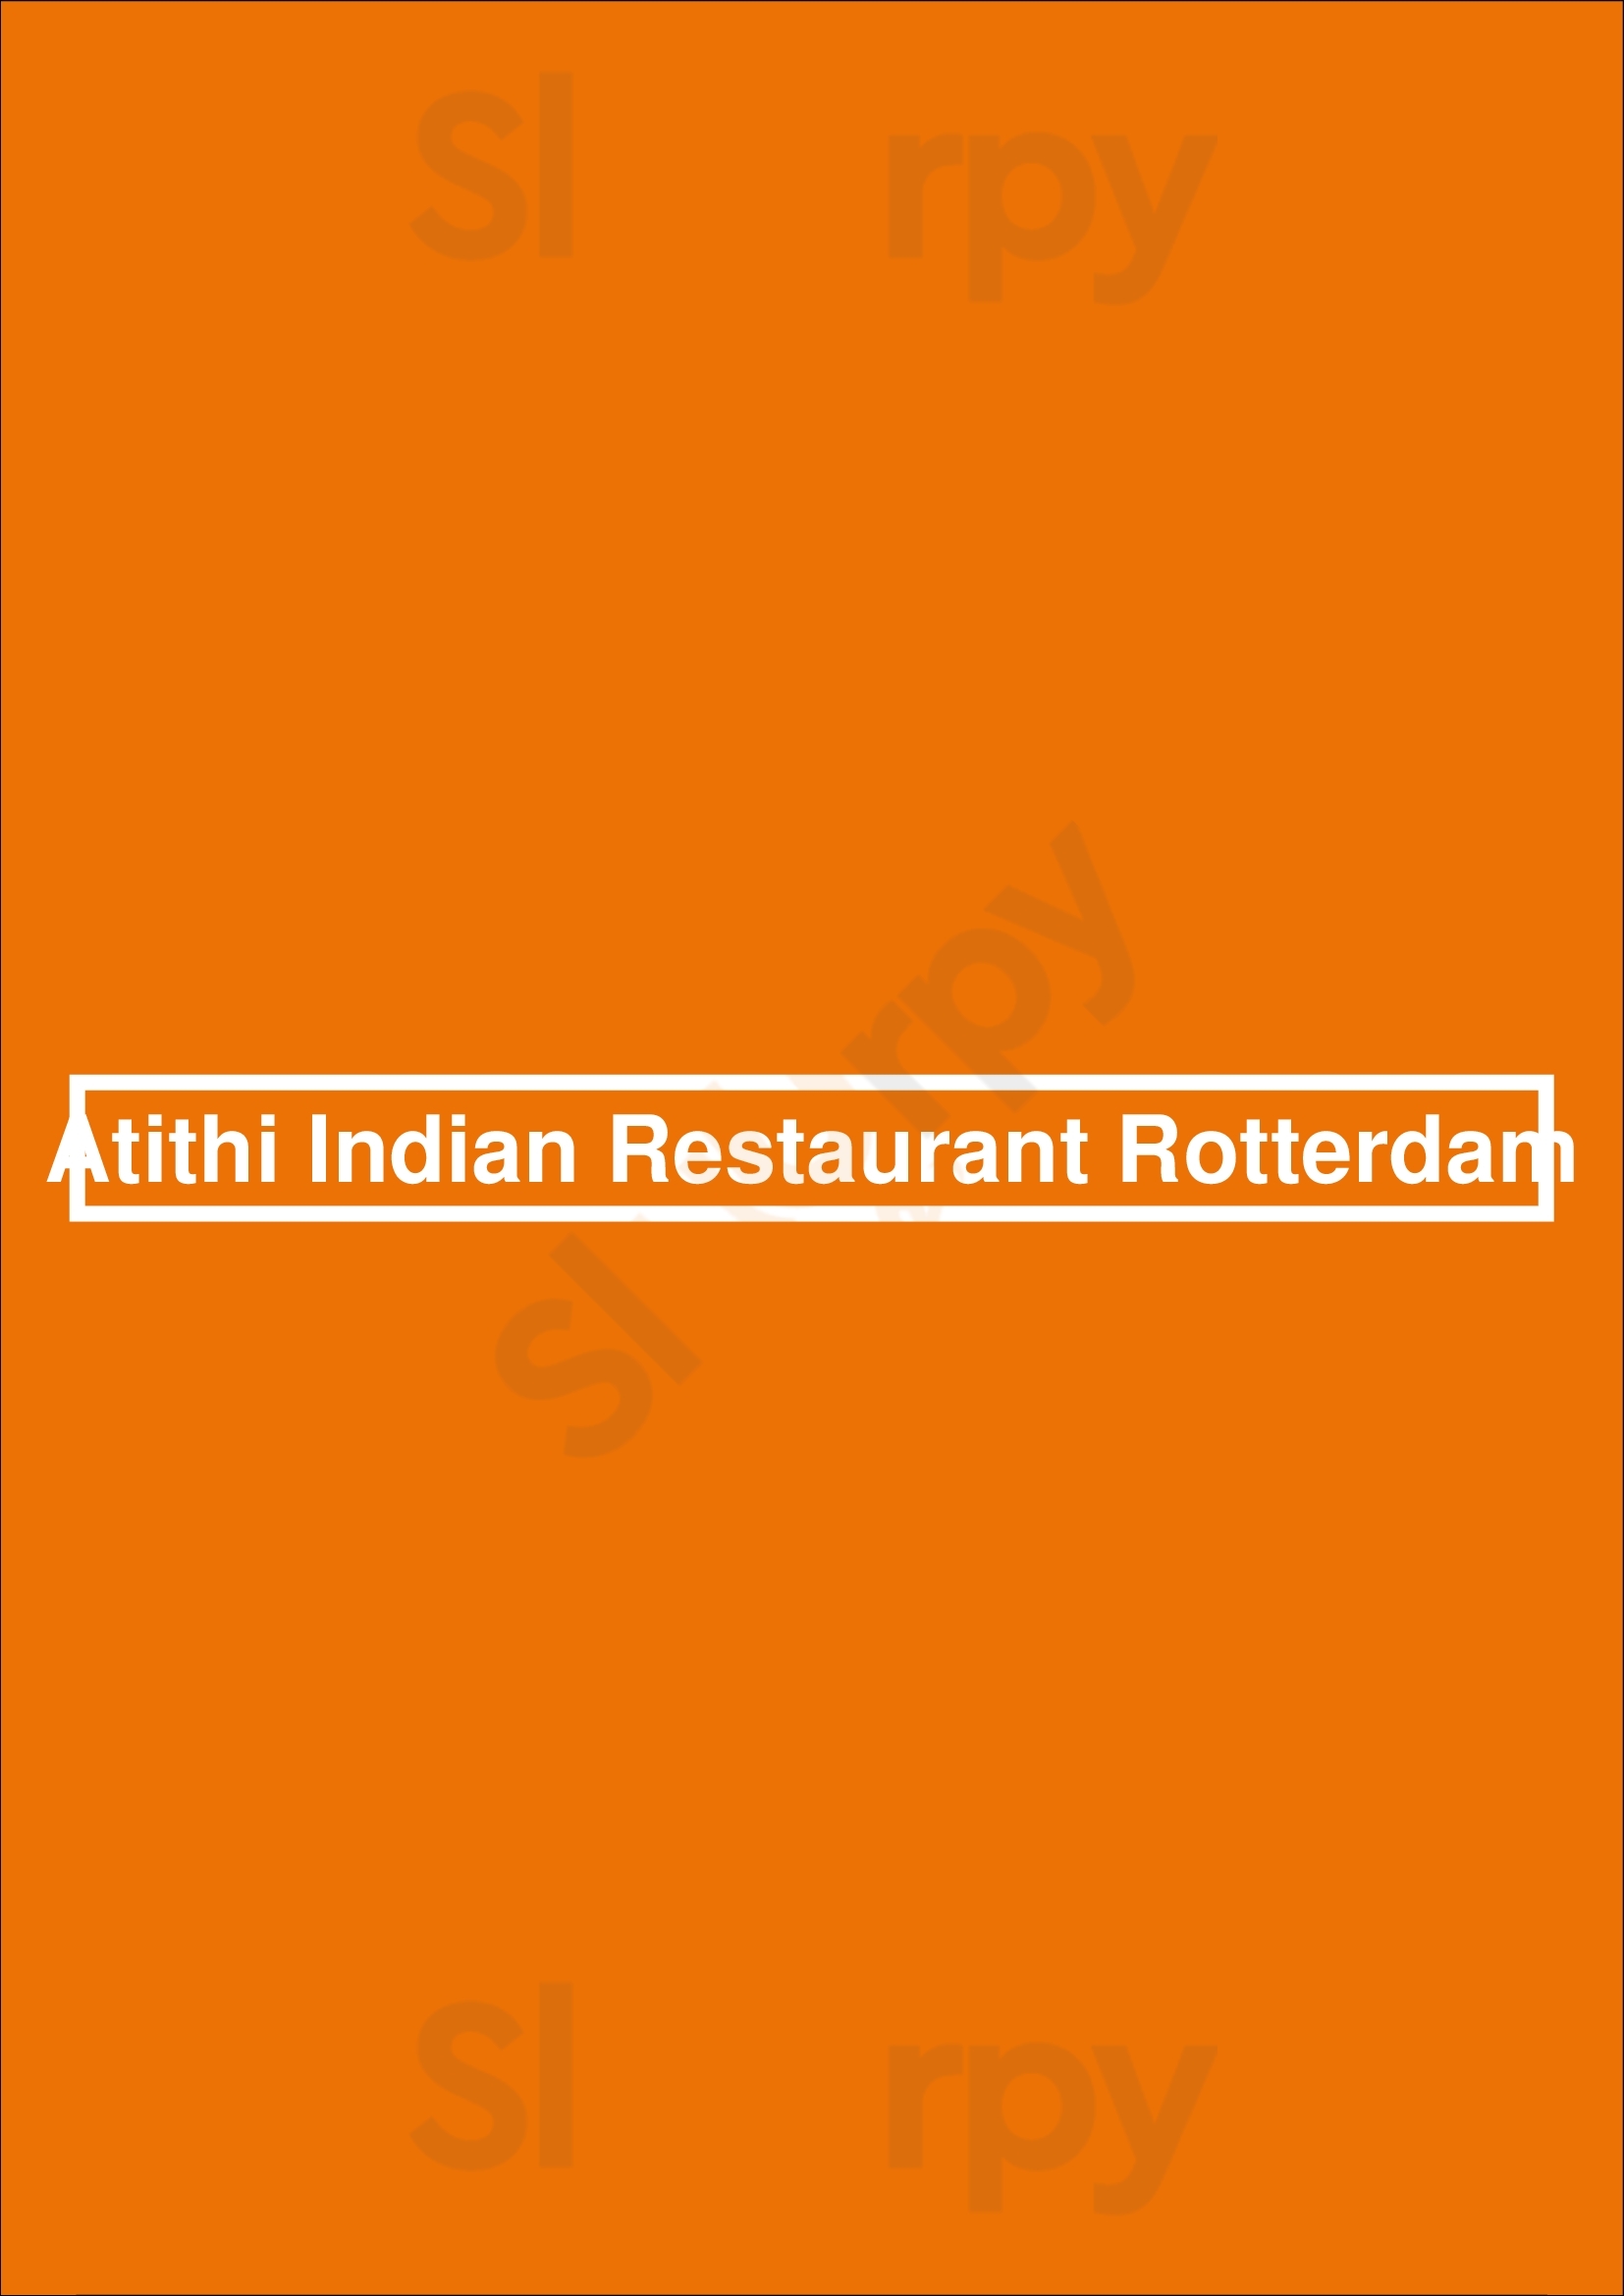 Atithi Indian Restaurant Rotterdam Rotterdam Menu - 1